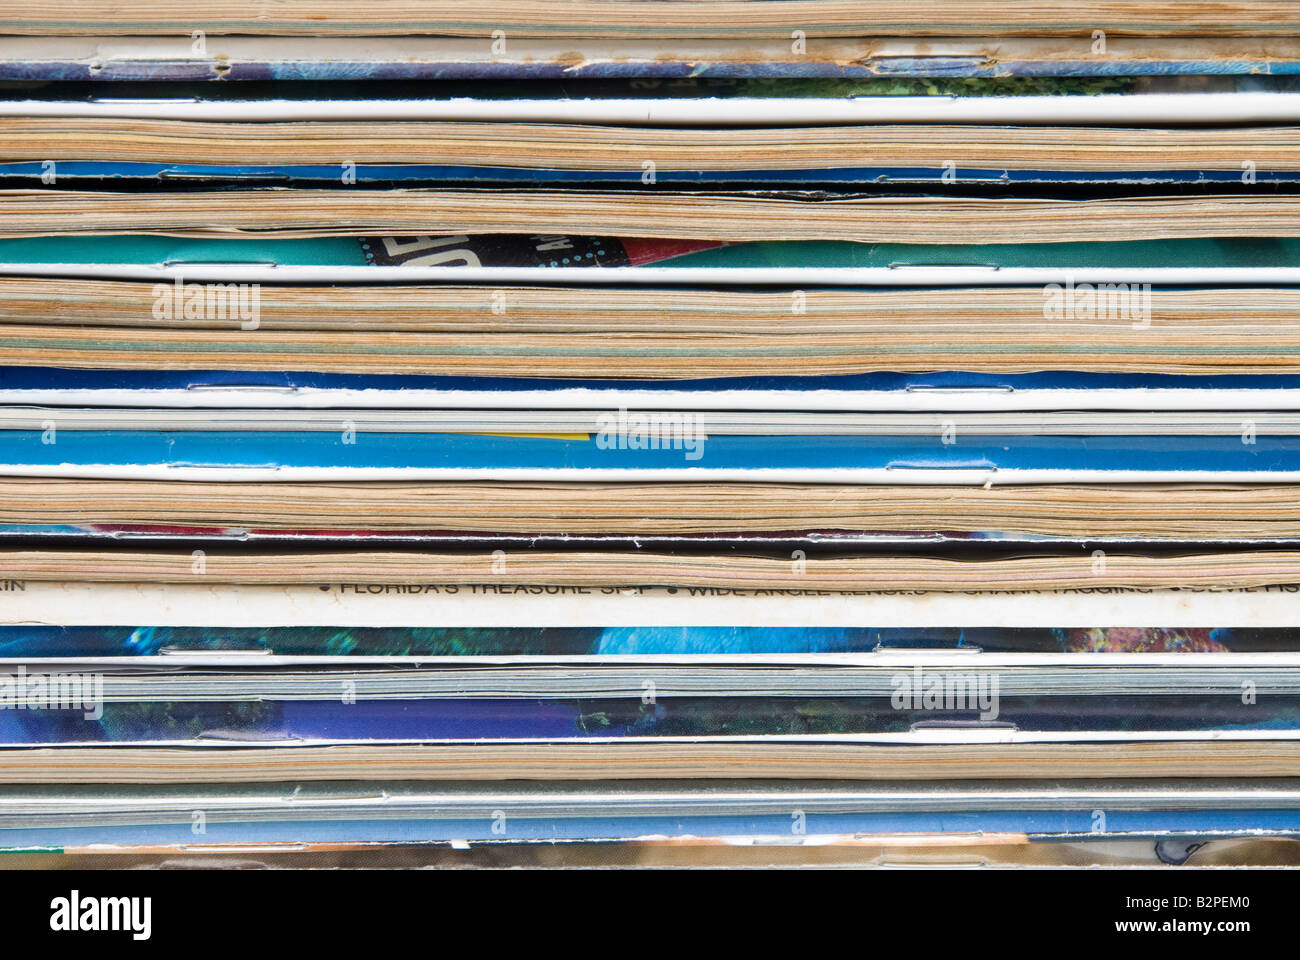 Una pila di vecchie riviste usurati isolata contro uno sfondo bianco Foto Stock